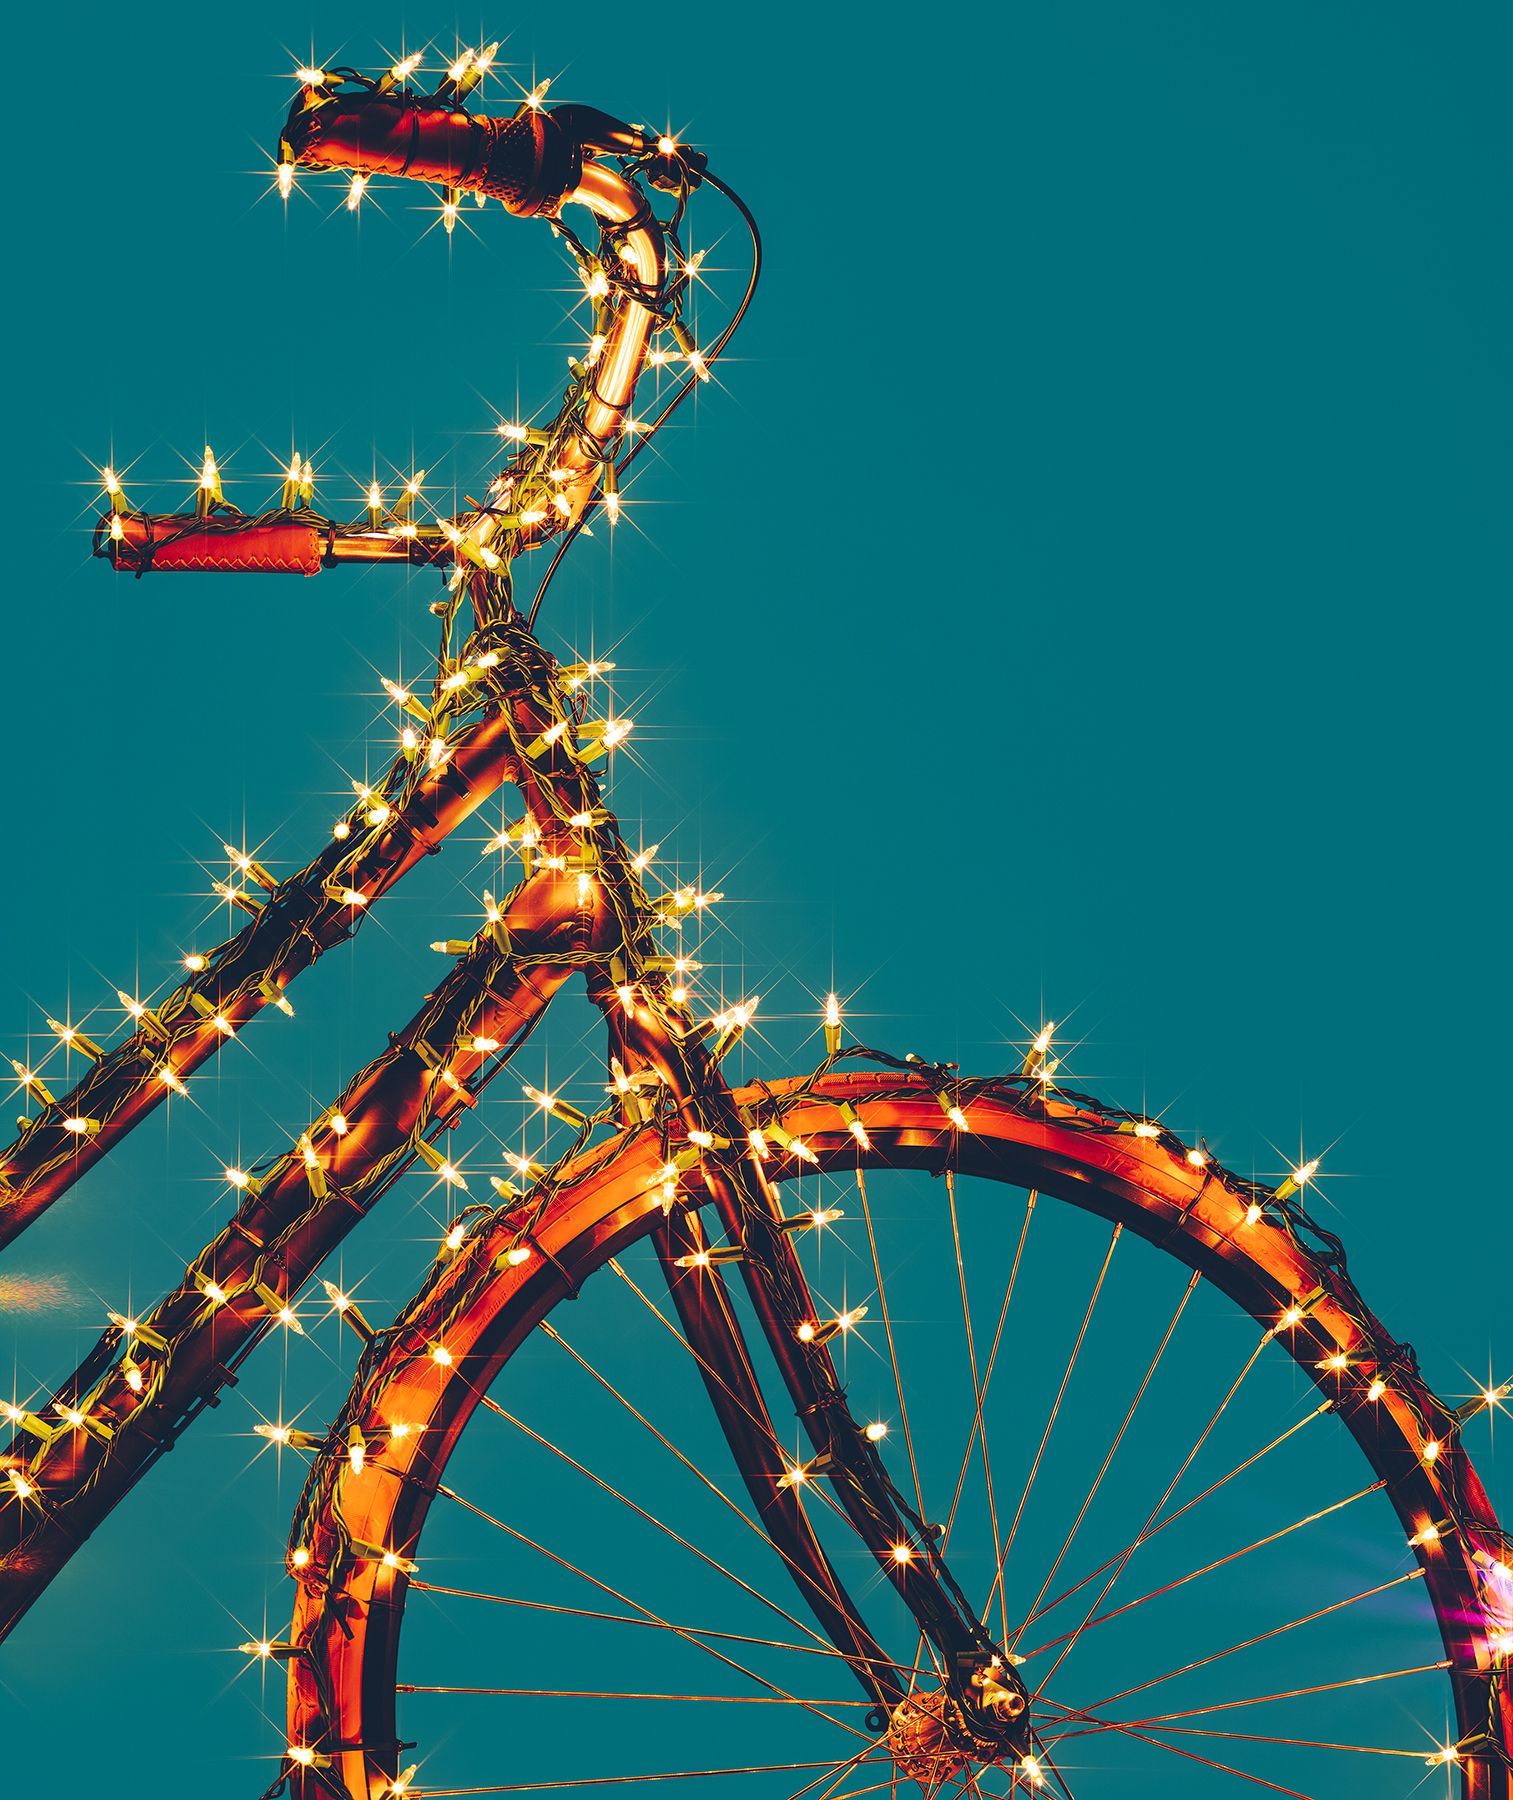 Polkupyörä kääritty valoihin